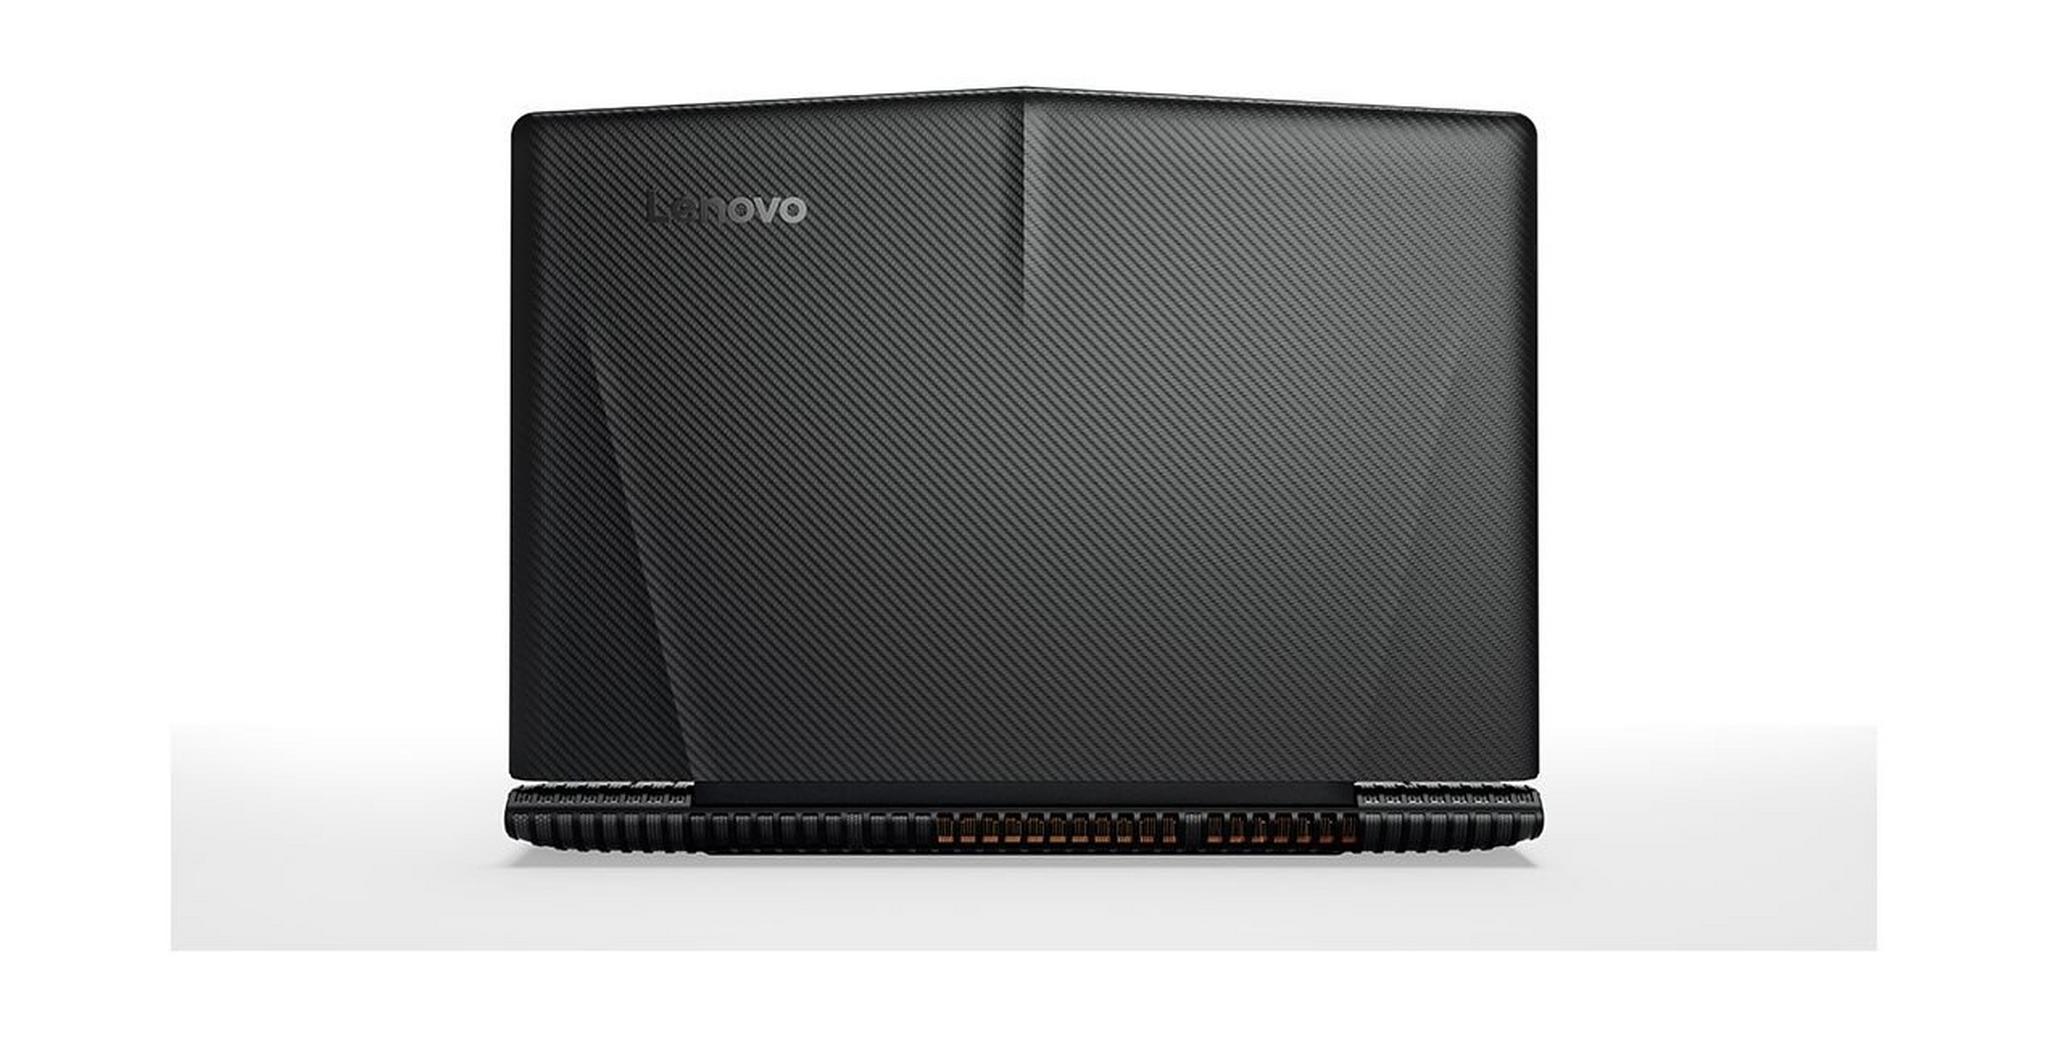 Lenovo Legion Y520 GeForce GTX 1060 6GB Core i7 16GB RAM 2TB HDD + 128GB SSD 15.6 inch Gaming Laptop